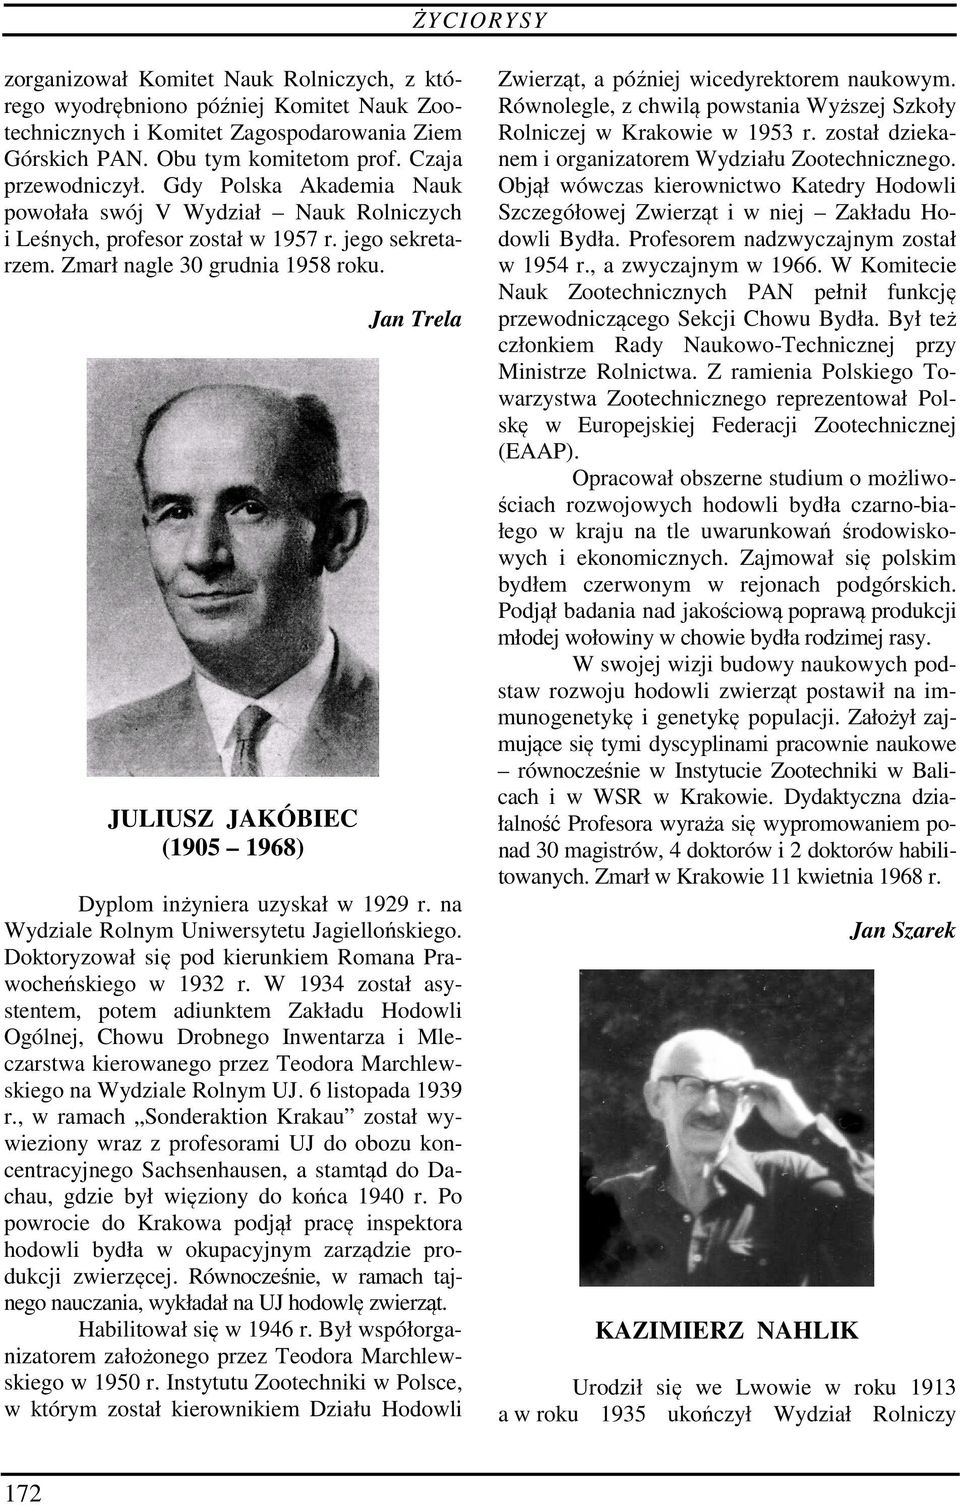 JULIUSZ JAKÓBIEC (1905 1968) Dyplom inżyniera uzyskał w 1929 r. na Wydziale Rolnym Uniwersytetu Jagiellońskiego. Doktoryzował się pod kierunkiem Romana Prawocheńskiego w 1932 r.